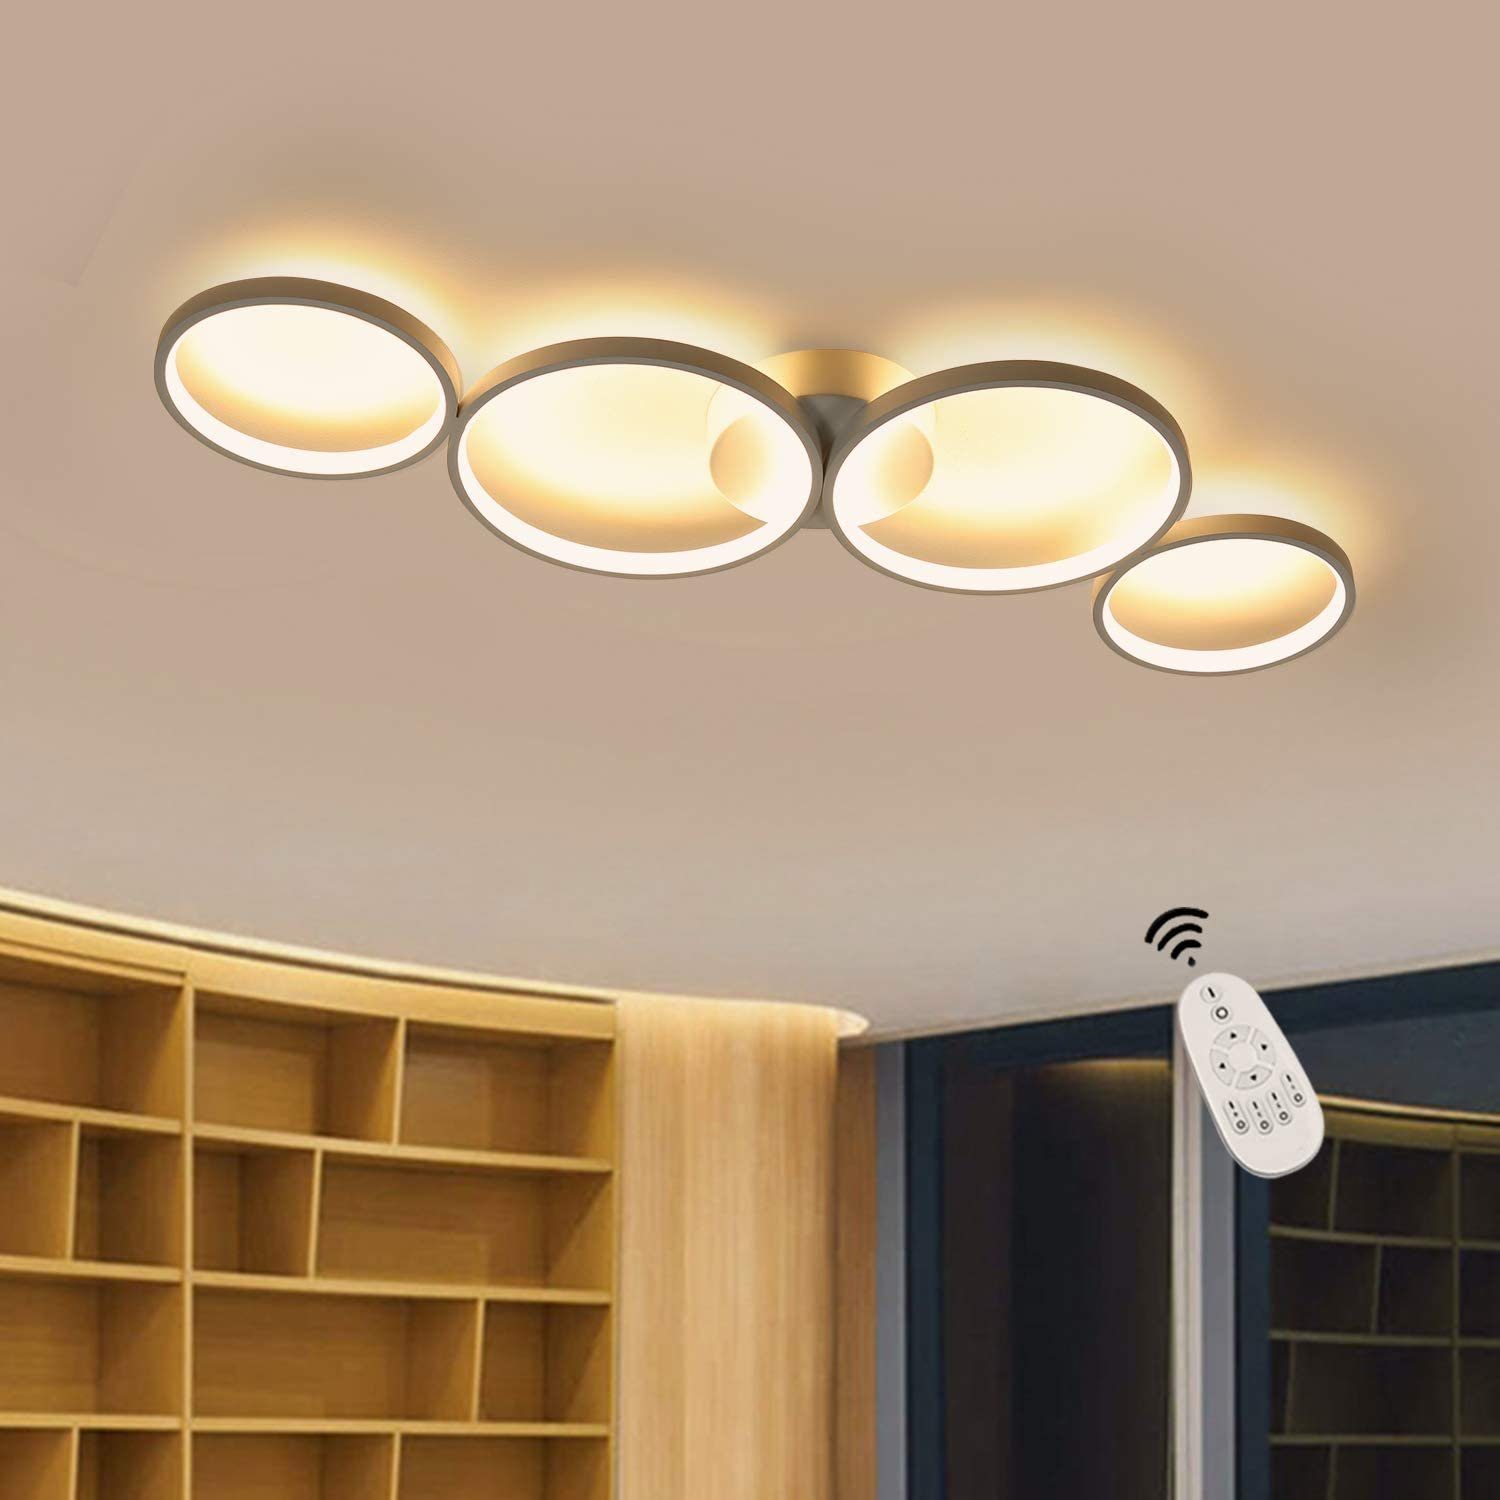 ZMH LED Deckenleuchte »Deckenlampe Modern 4 Flammig in Ringoptik Dimmbar  55W Weiß/Schwarz Innen aus Aluminium« online kaufen | OTTO